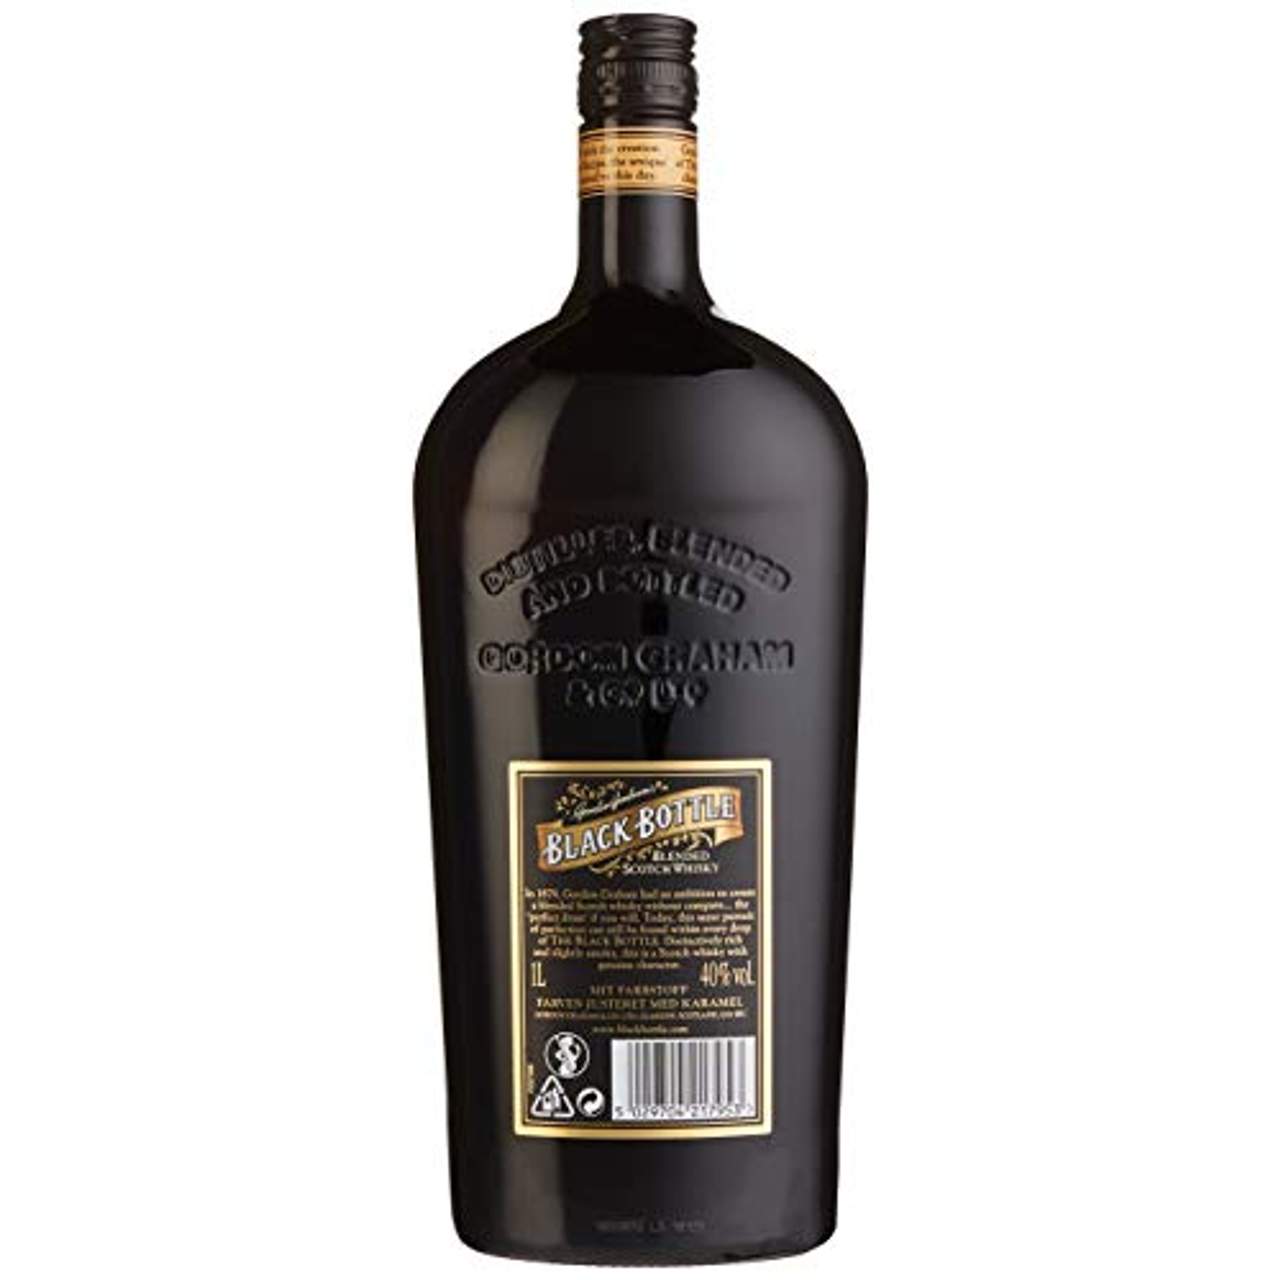 Gordon's Graham's Black Bottle Blended Whisky